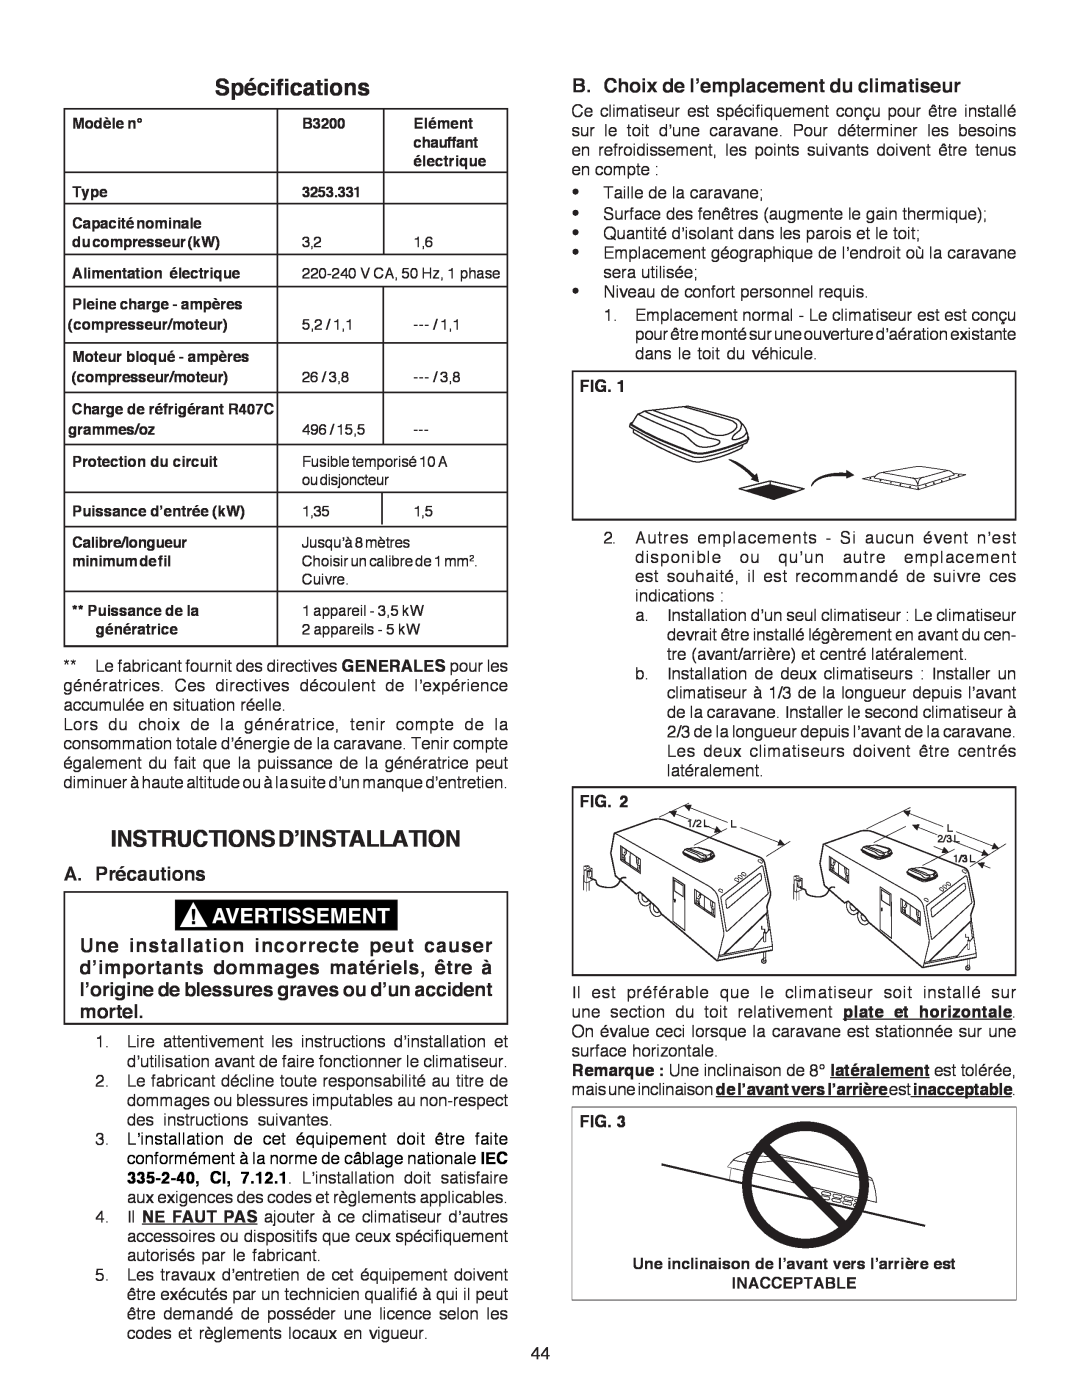 Dometic B3200 Spécifications, Instructionsd’Installation, A. Précautions, B. Choix de l’emplacement du climatiseur, Fig 